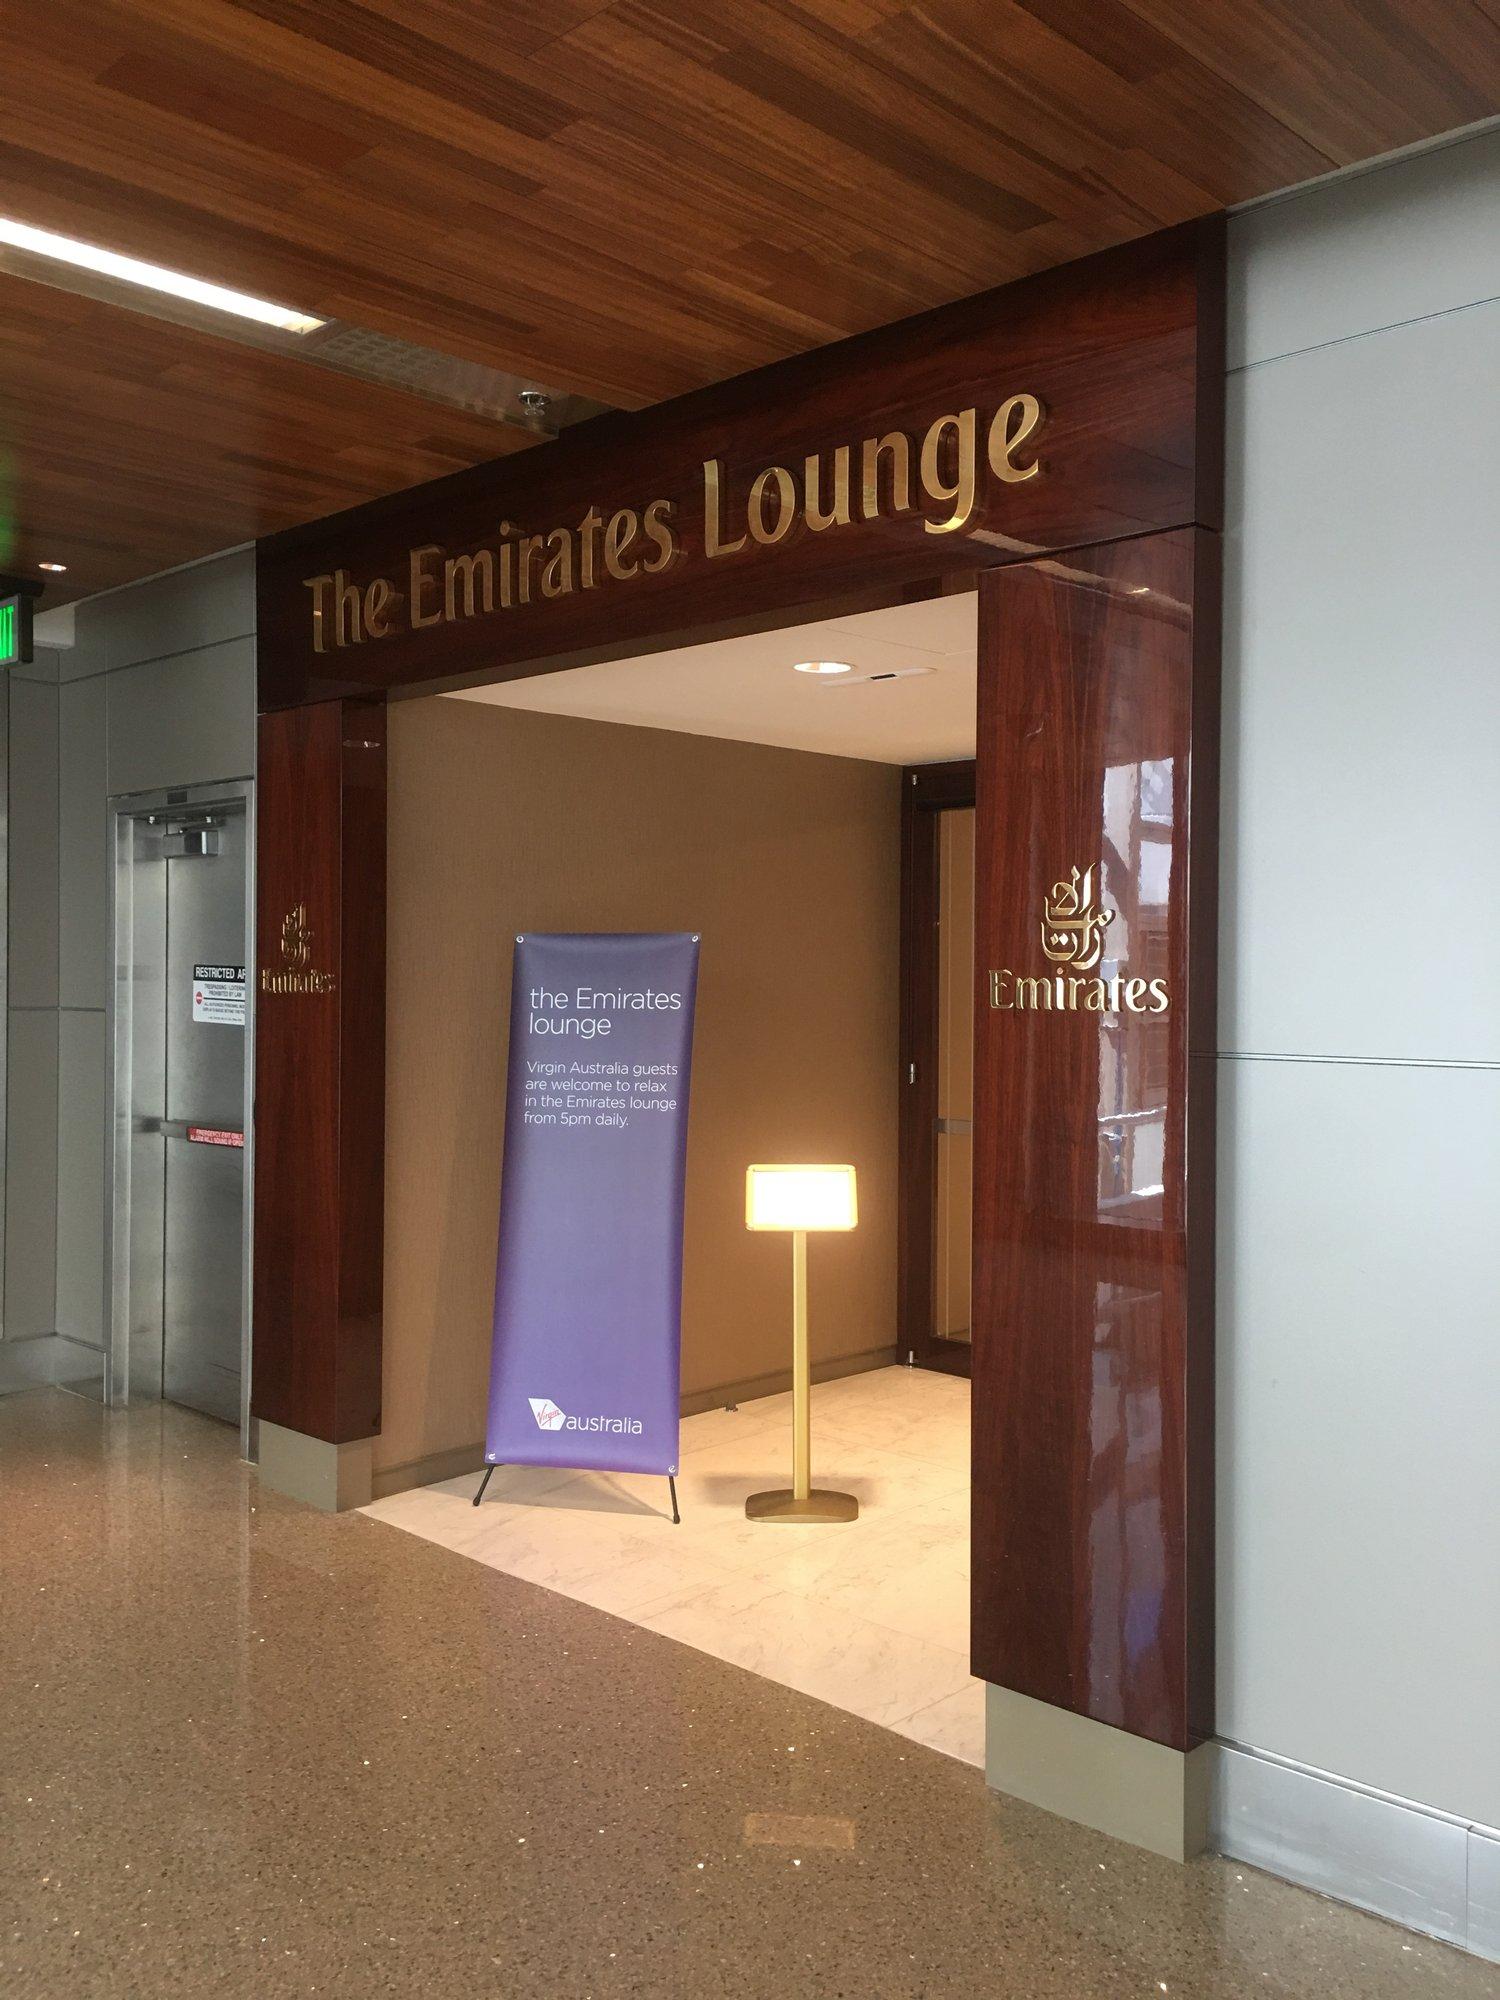 The Emirates Lounge image 2 of 12